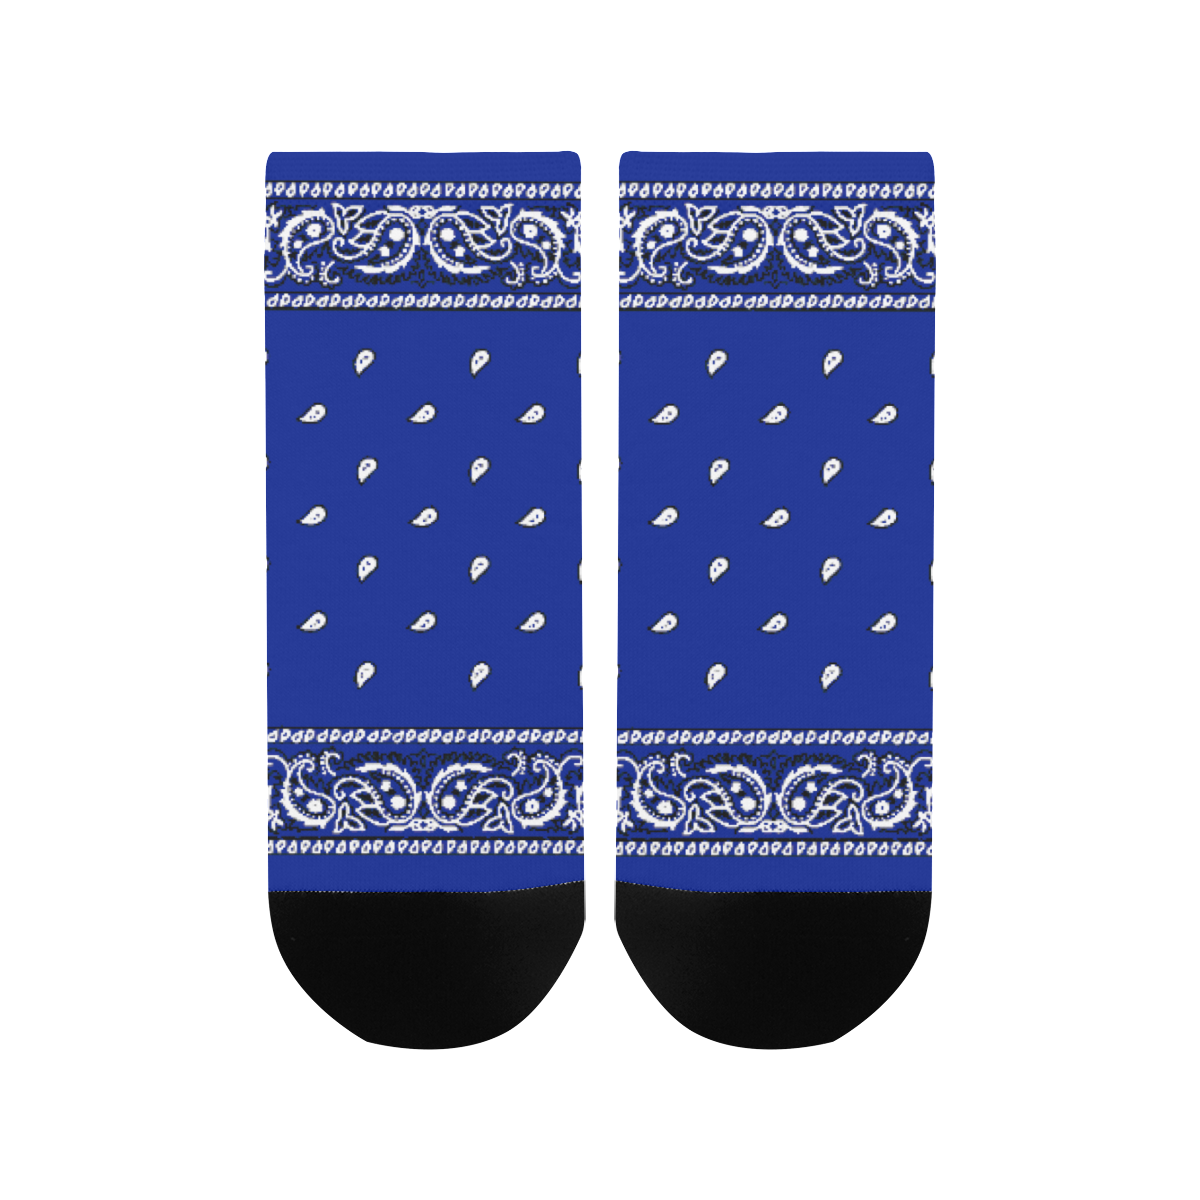 KERCHIEF PATTERN BLUE Women's Ankle Socks